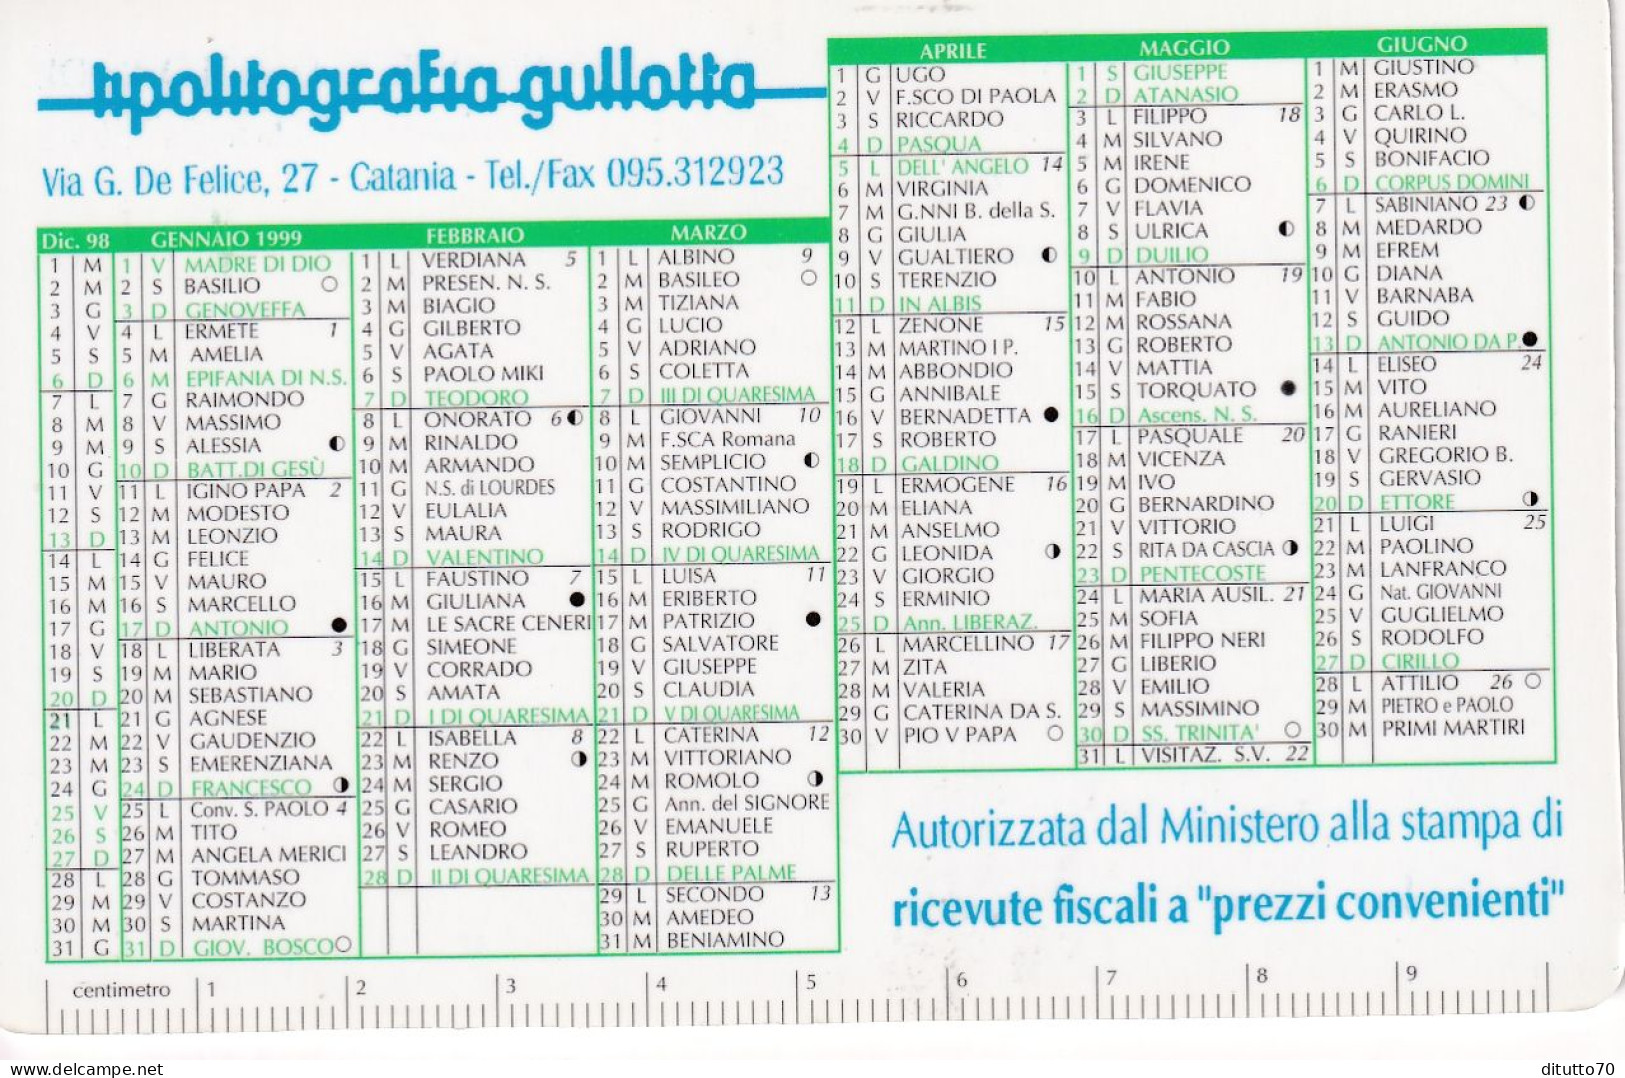 Calendarietto - Lipolitografia Gullotta - Catania - Anno 1999 - Klein Formaat: 1991-00